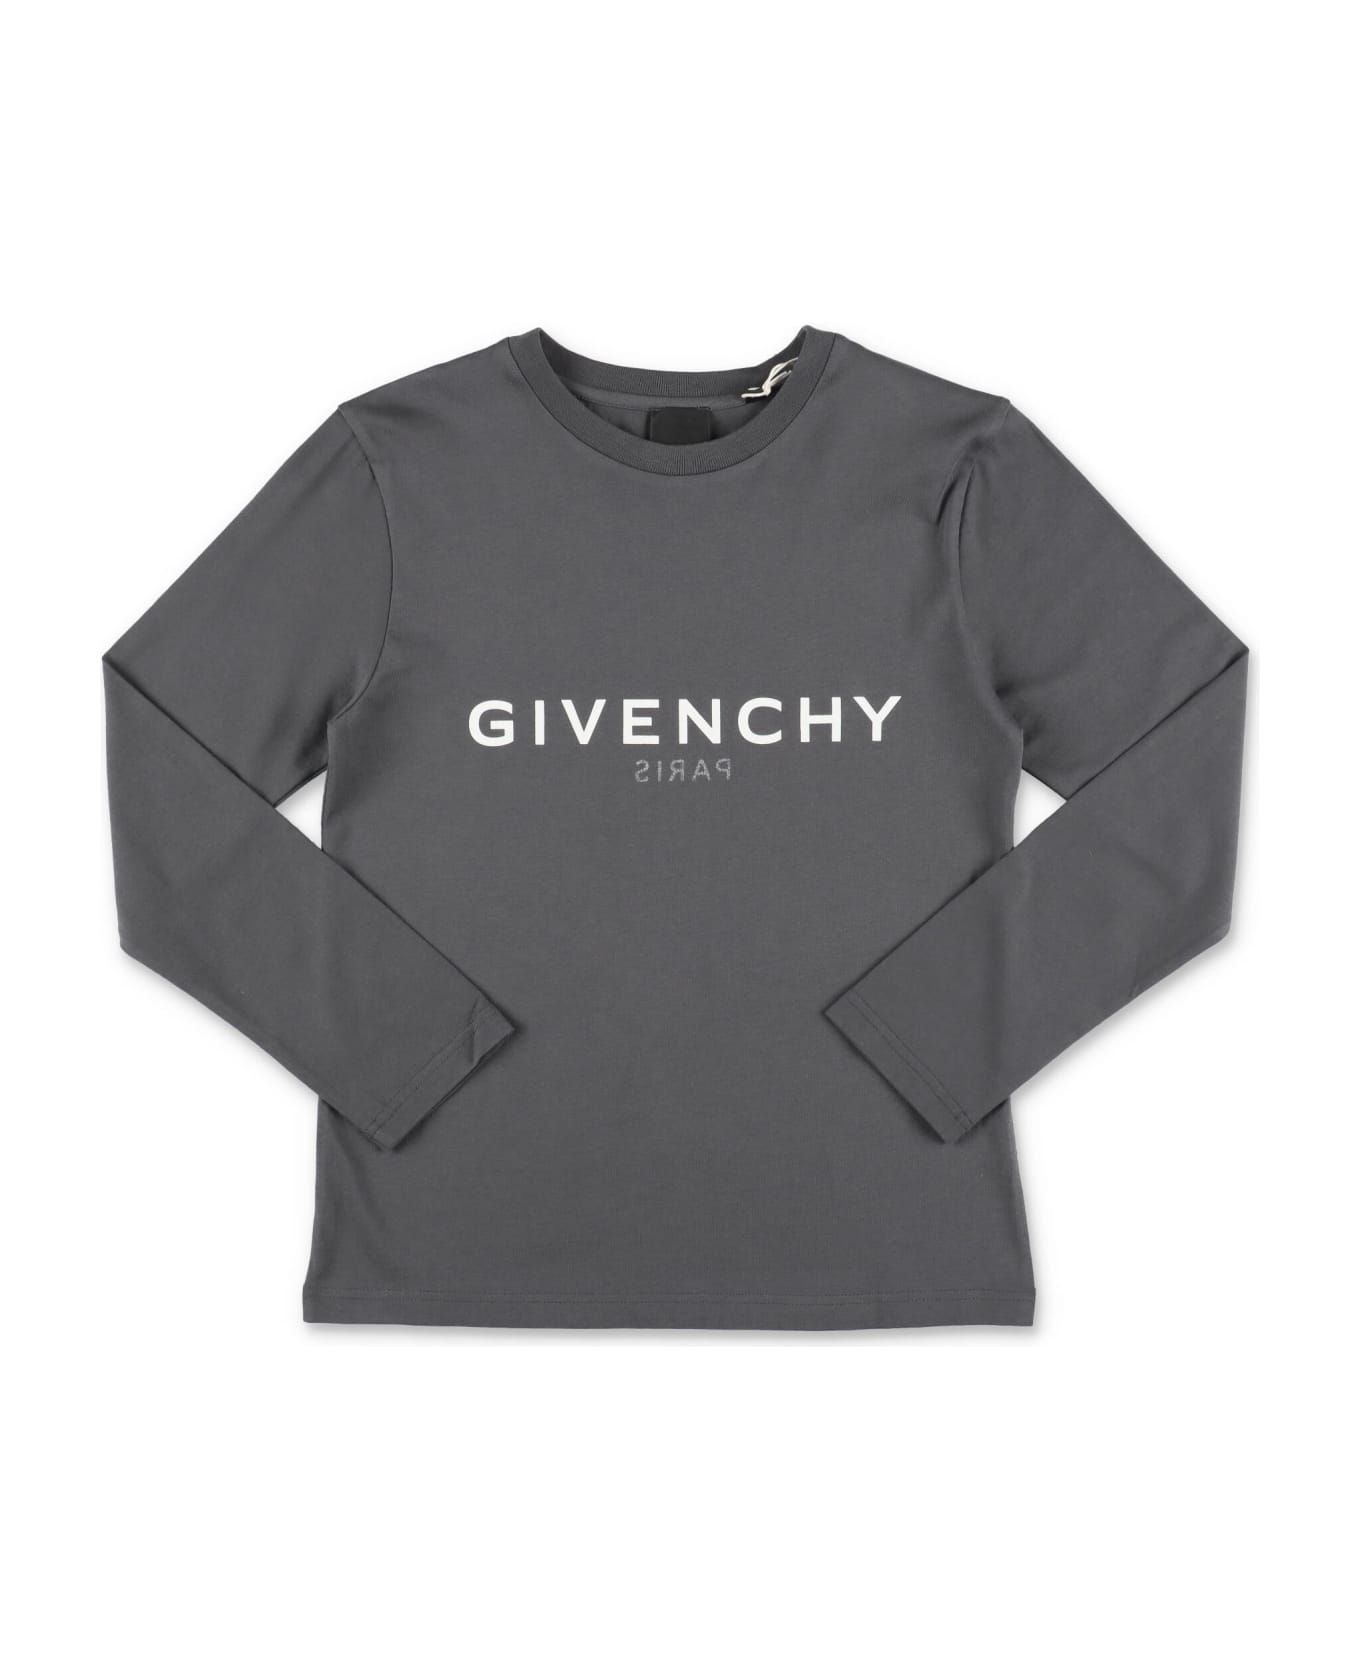 Givenchy T-shirt Grigio Scuro In Jersey Di Cotone Bambino - Grigio